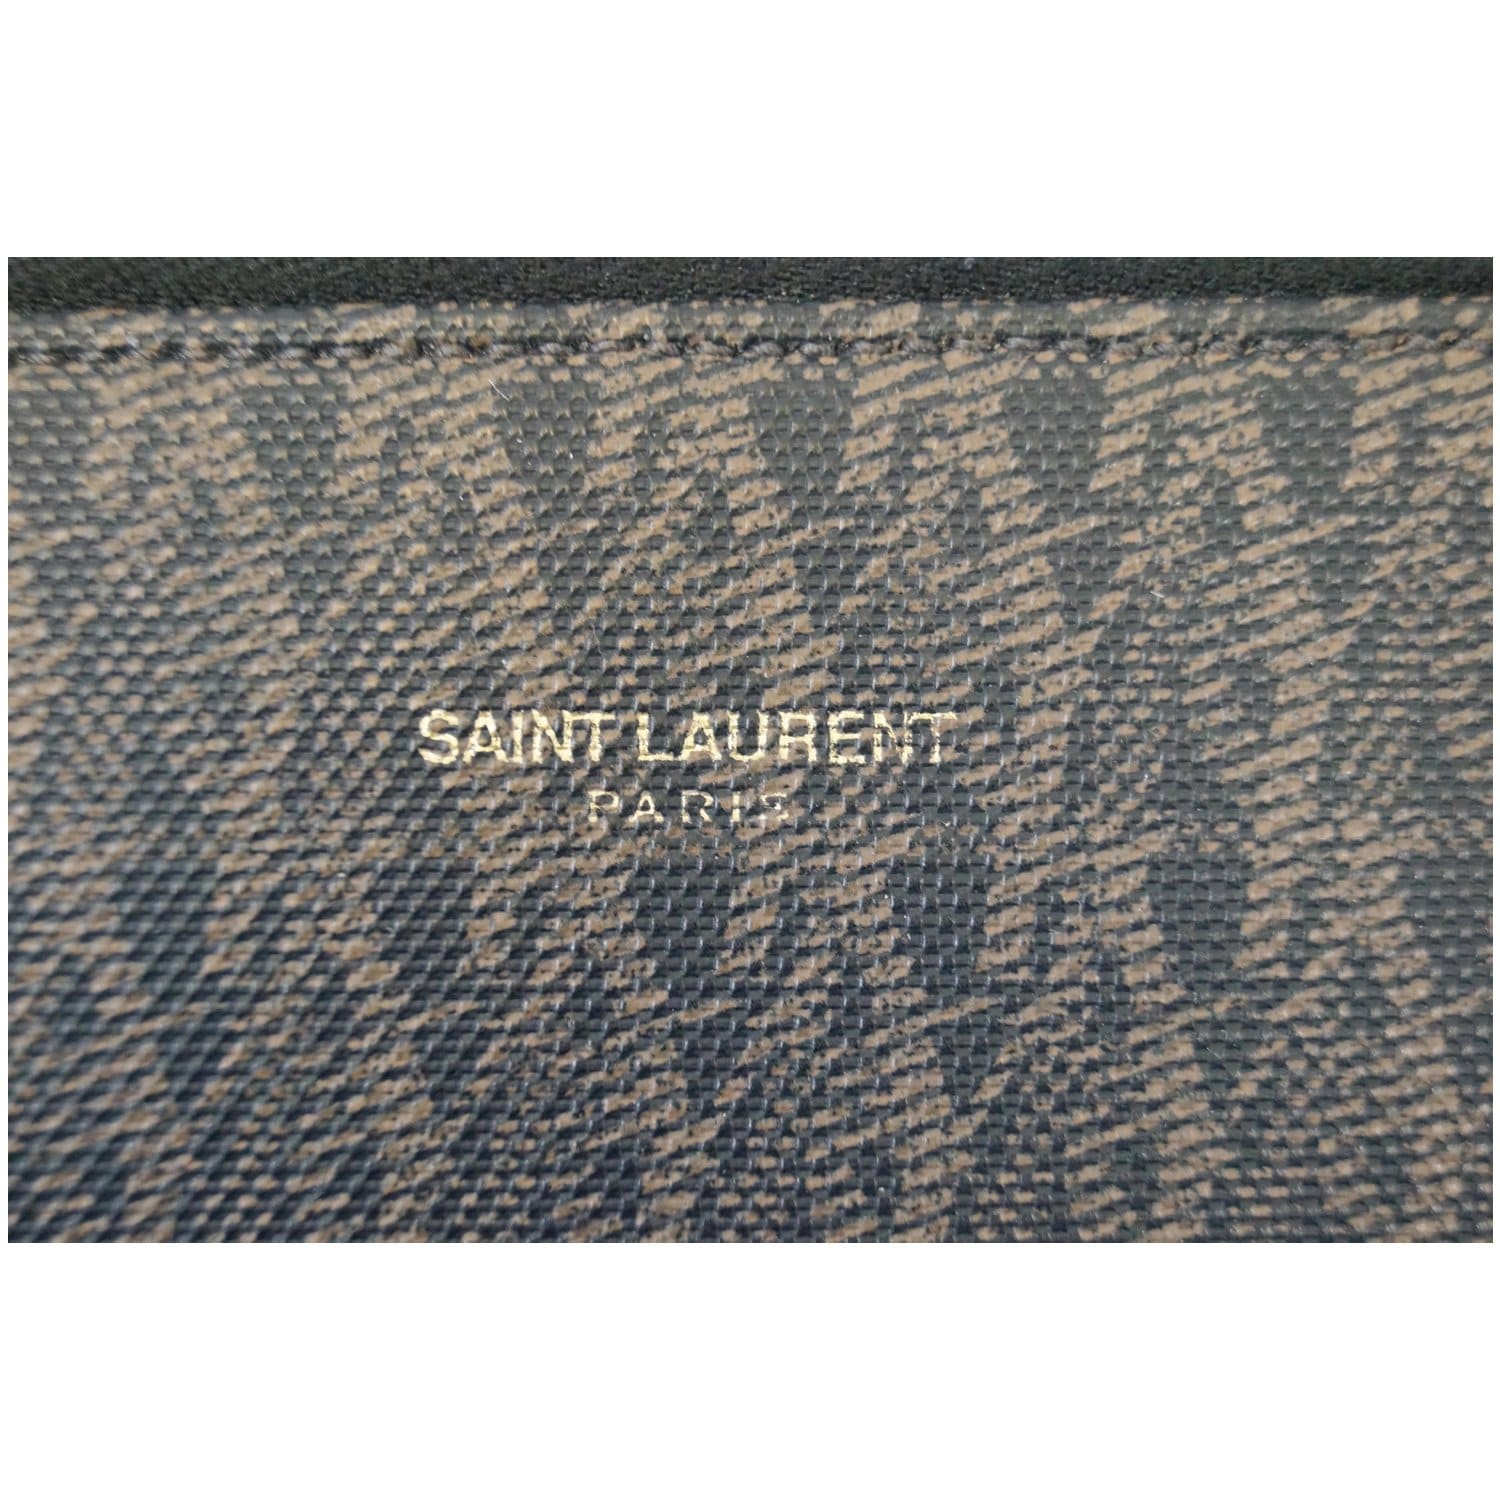 Saint Laurent monogram-print Duffle Bag - Brown